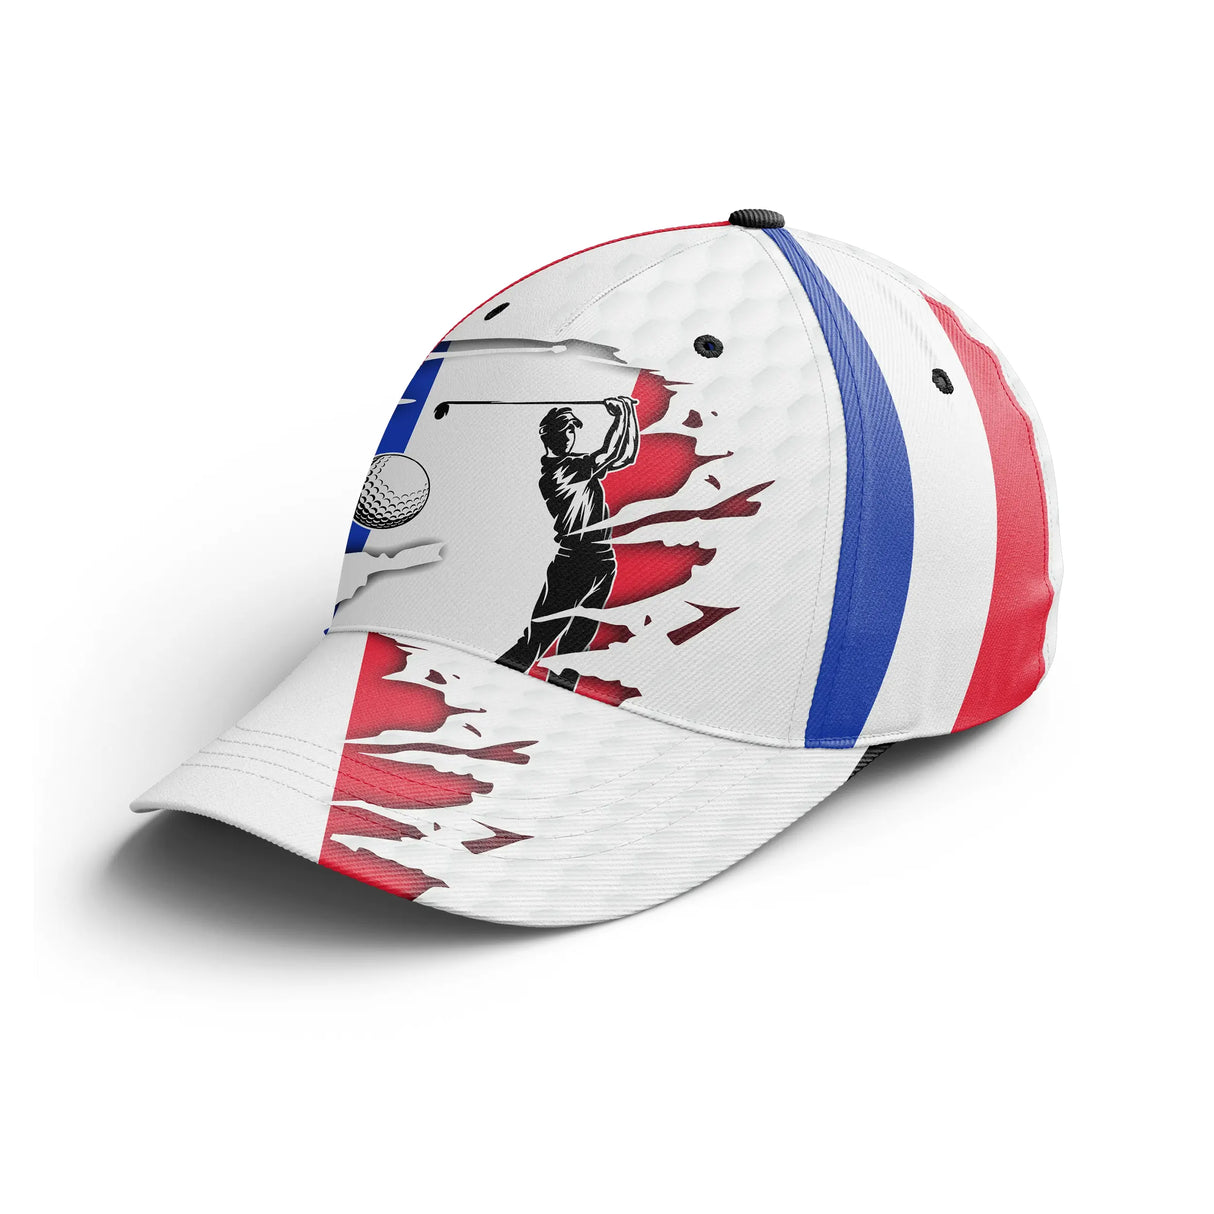 Chiptshirts – Performance Golf Cap, Golfball-Designs, Frankreich-Flagge, ideales Geschenk für Golf-Fans – CTS26052237